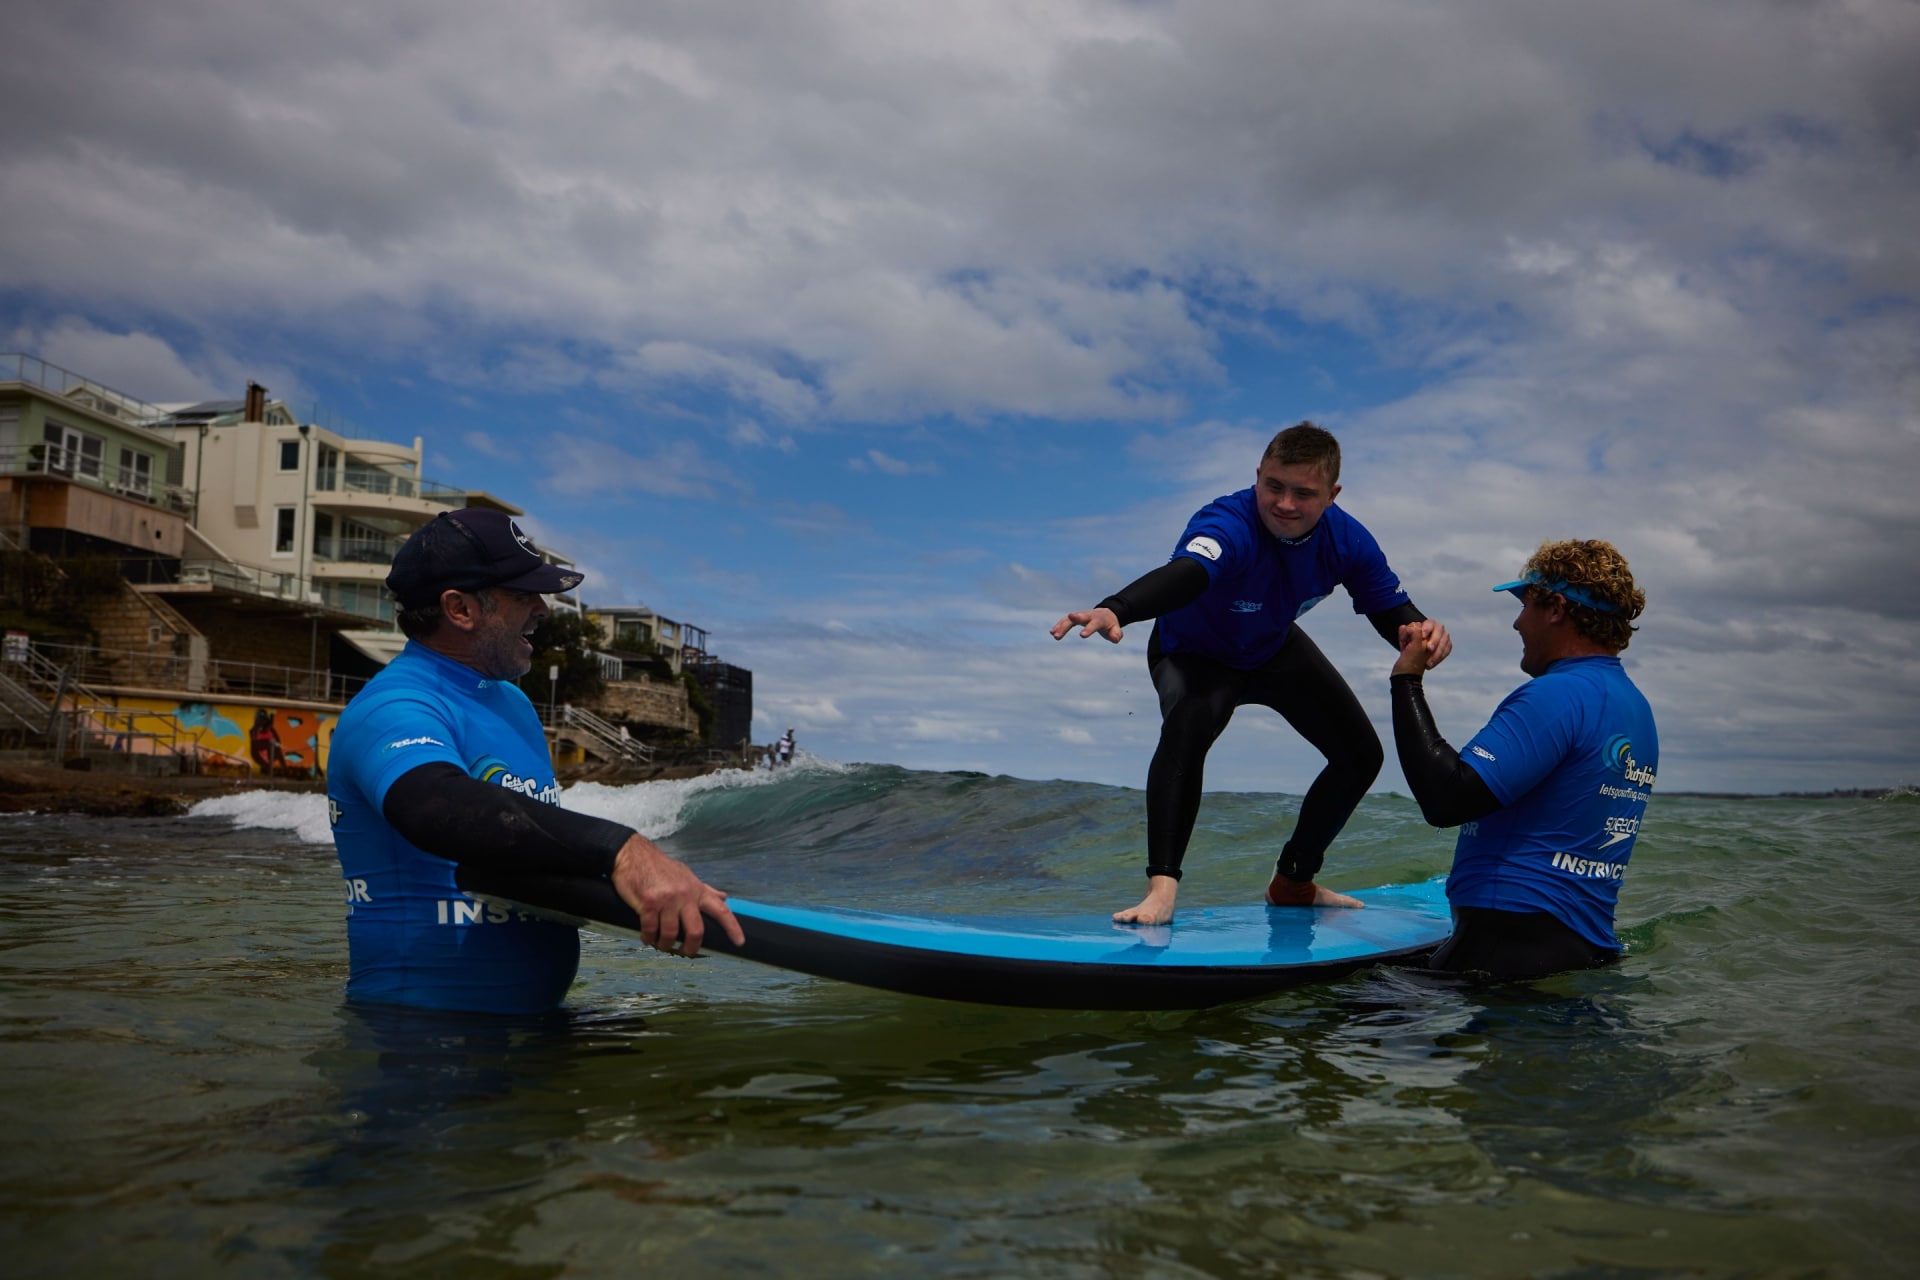 ニュー・サウス・ウェールズ州、シドニー、ボンダイ・ビーチ、レッツゴー・サーフィンのインストラクターの補助でサーフィンをする神経的多様性を持つ男性 © Tourism Australia